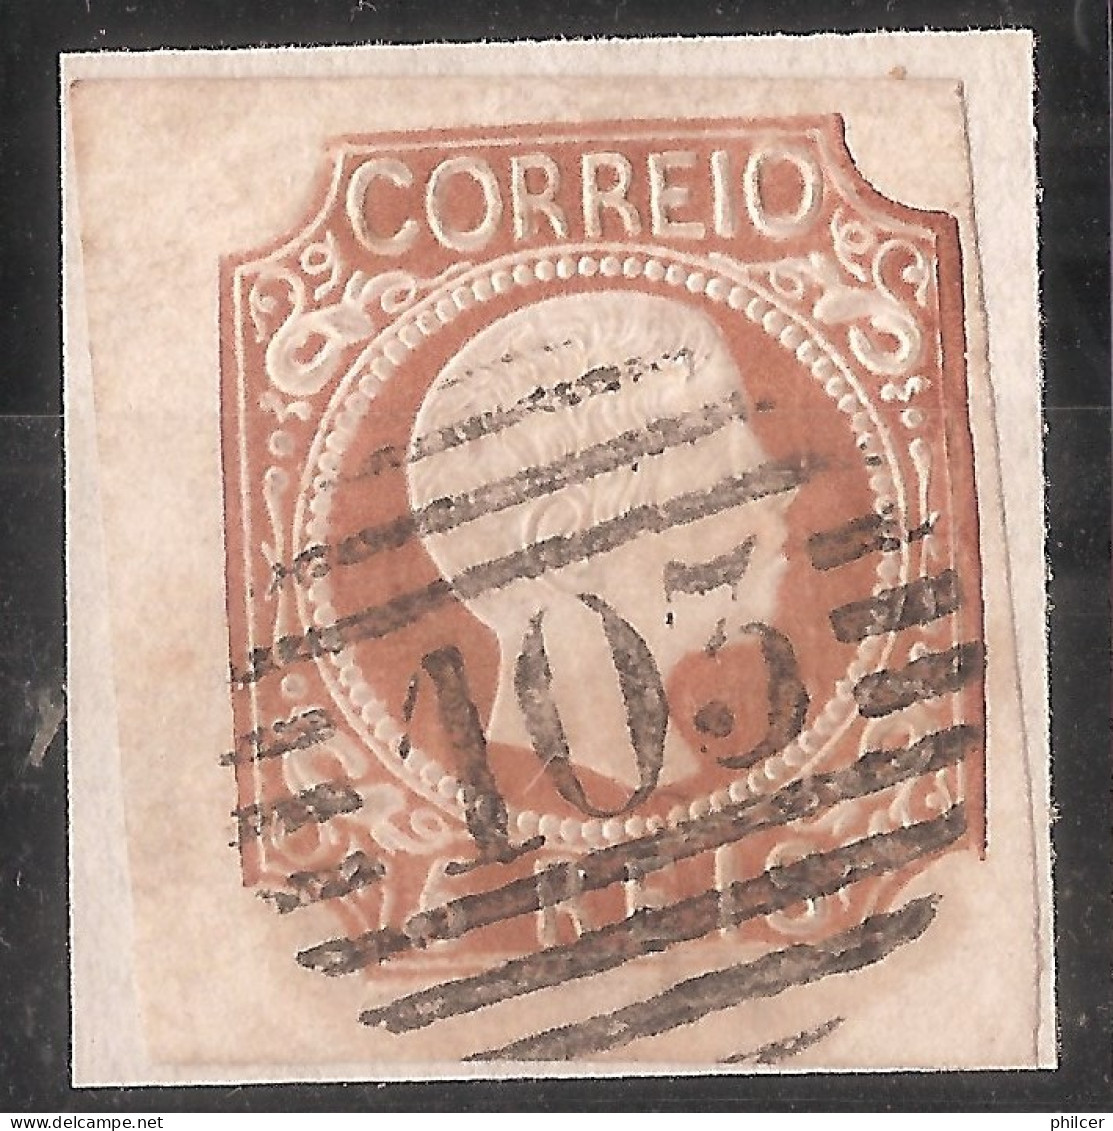 Portugal, 1856/8, # 10, Used - Usati